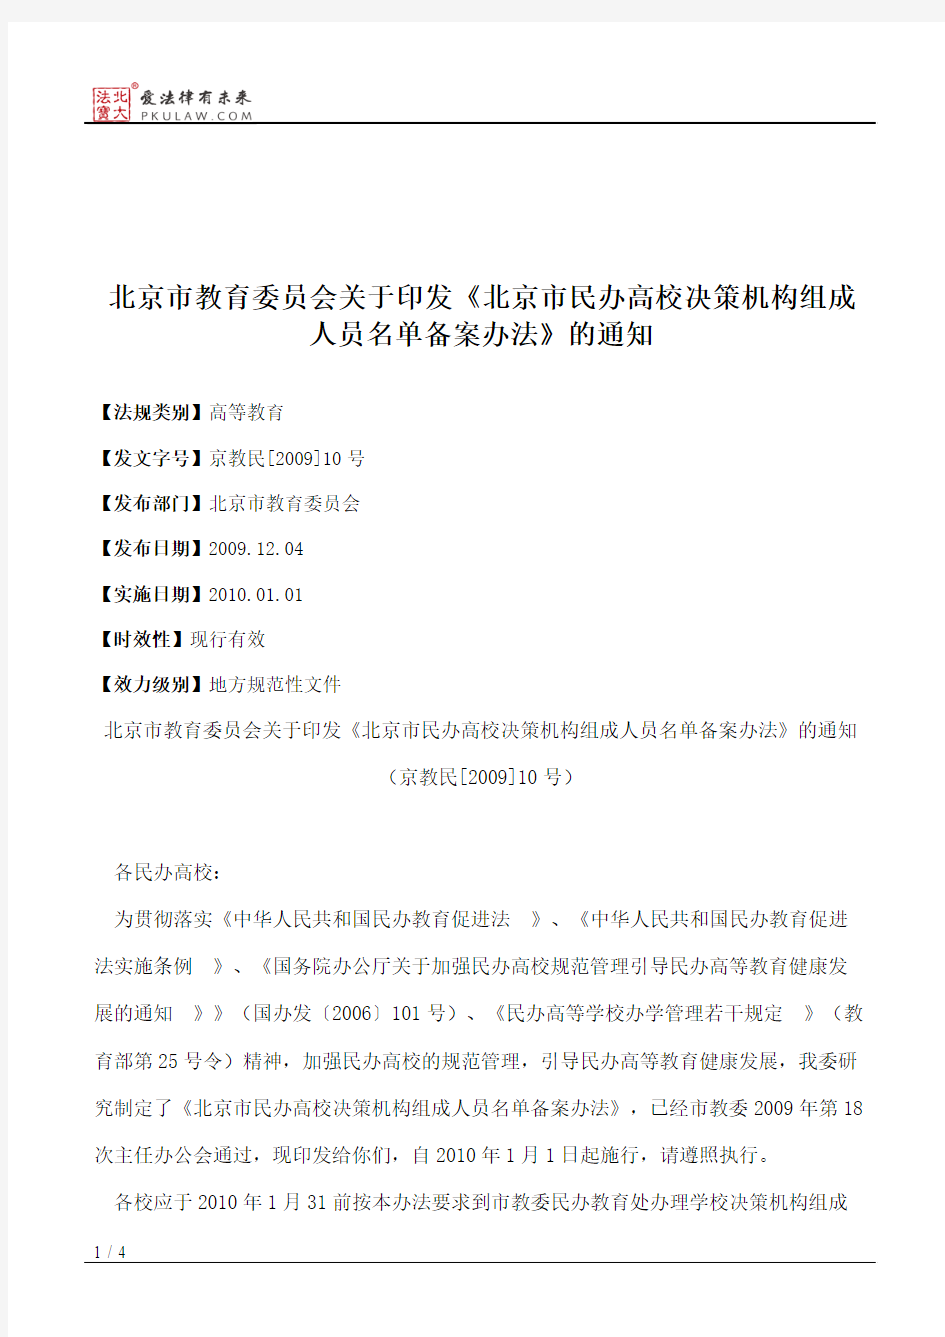 北京市教育委员会关于印发《北京市民办高校决策机构组成人员名单